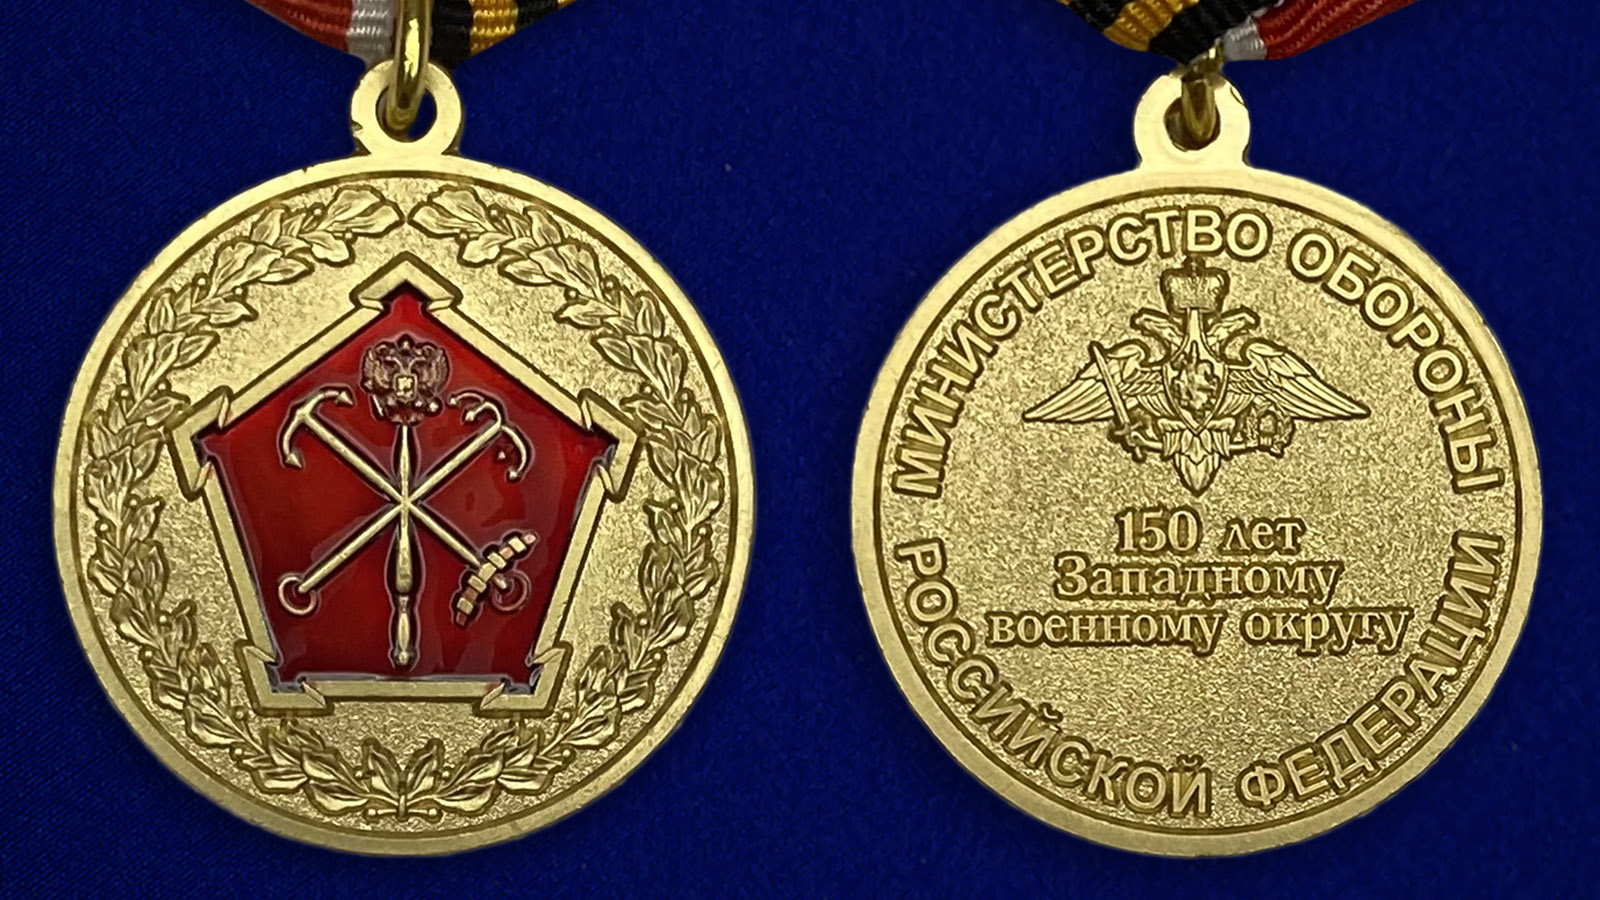 Описание медали "150 лет Западному военному округу" МО РФ - аверс и реверс